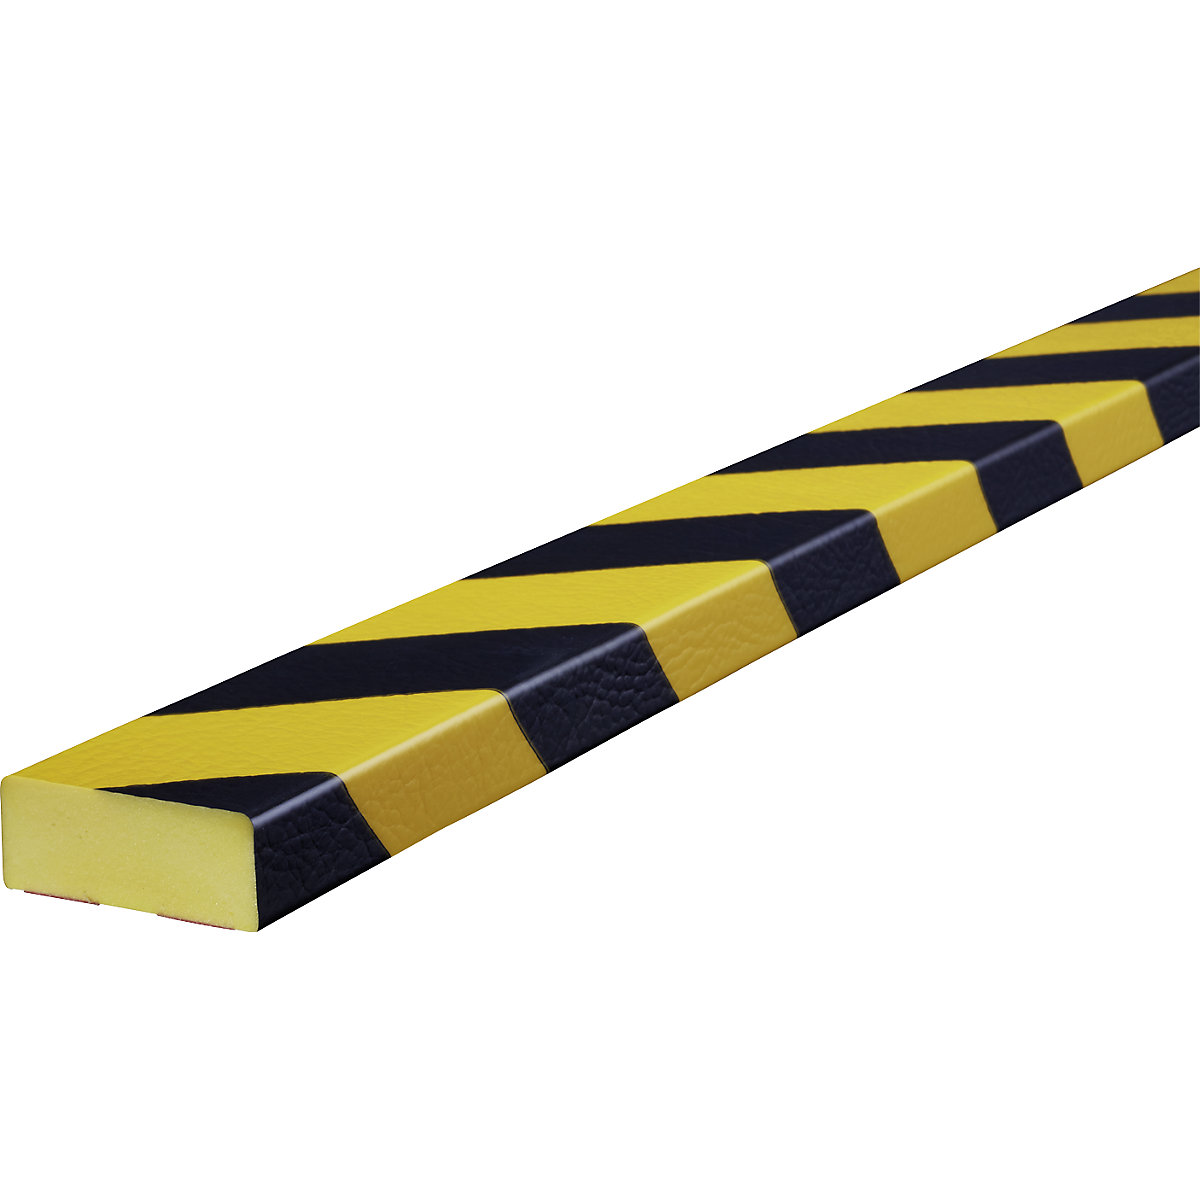 Protection des surfaces Knuffi® – SHG, type D, 1 rouleau de 50 m, noir/jaune